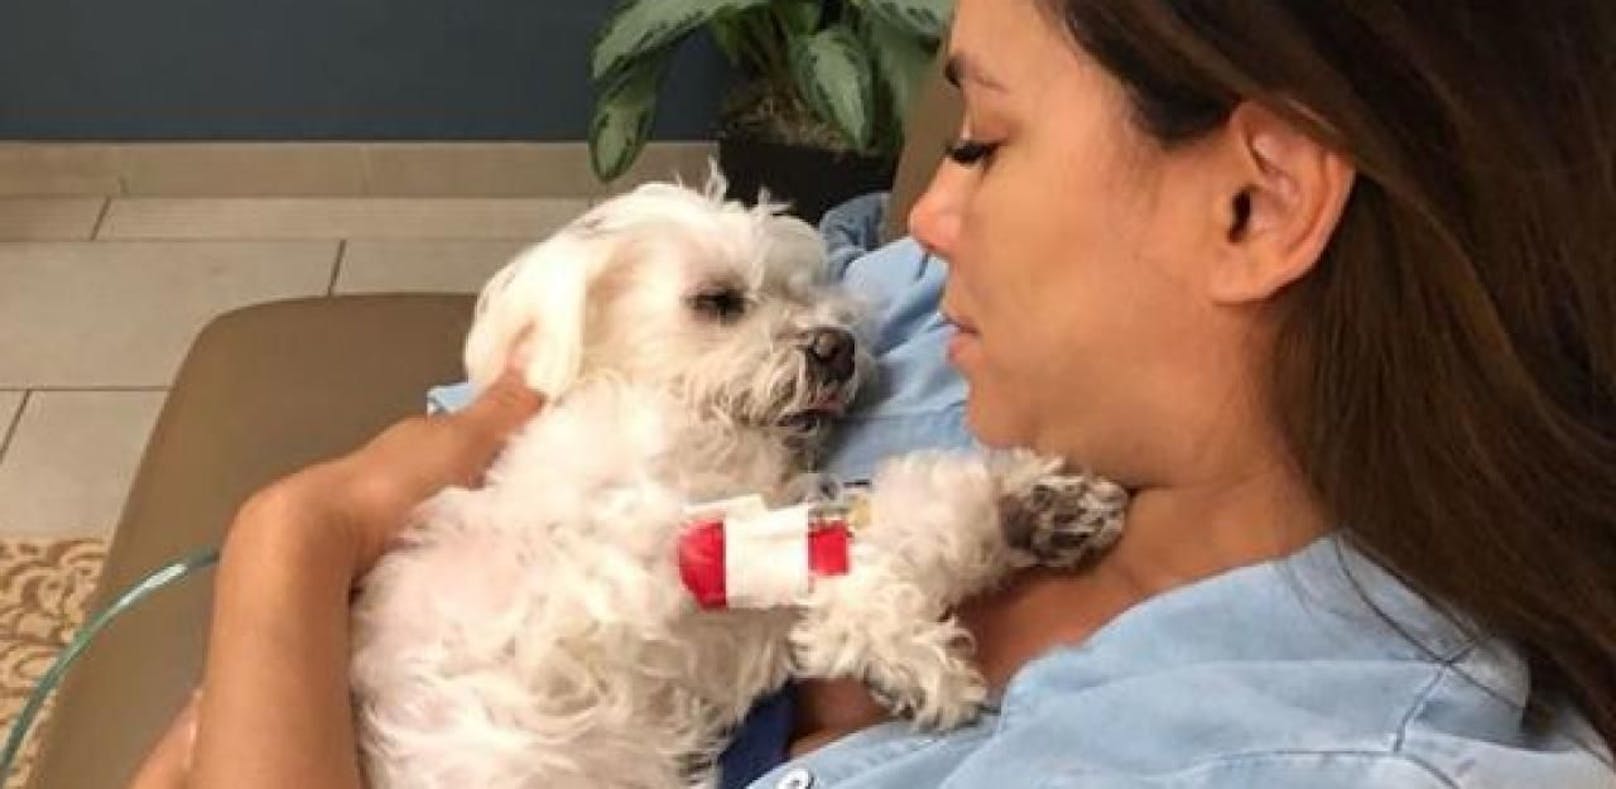 Eva Longoria trauert um ihren geliebten Hund Jinxy